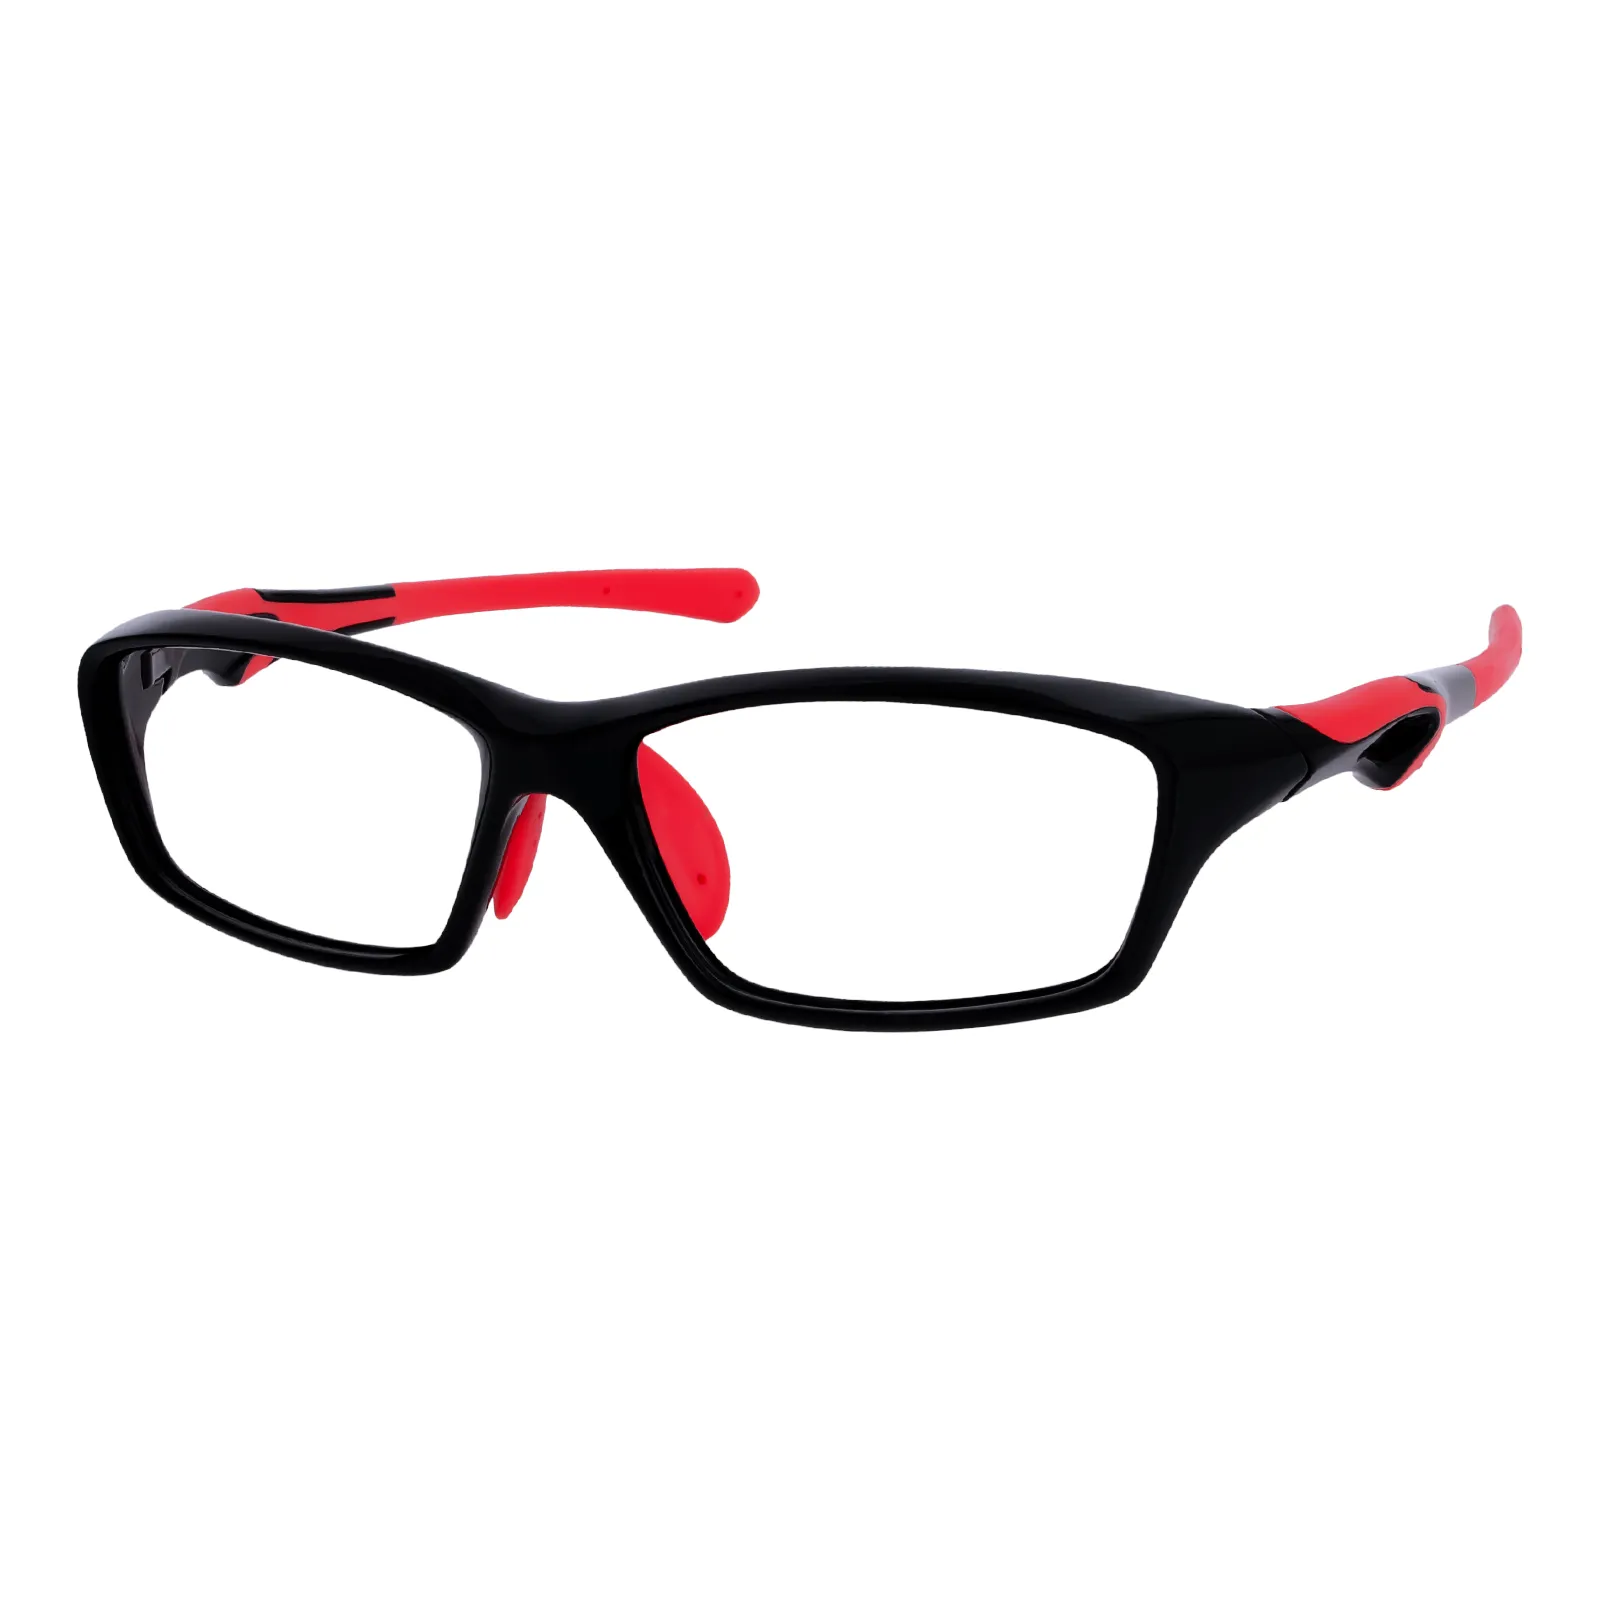 Nathaniel - Square Black/Red Glasses for Men & Women